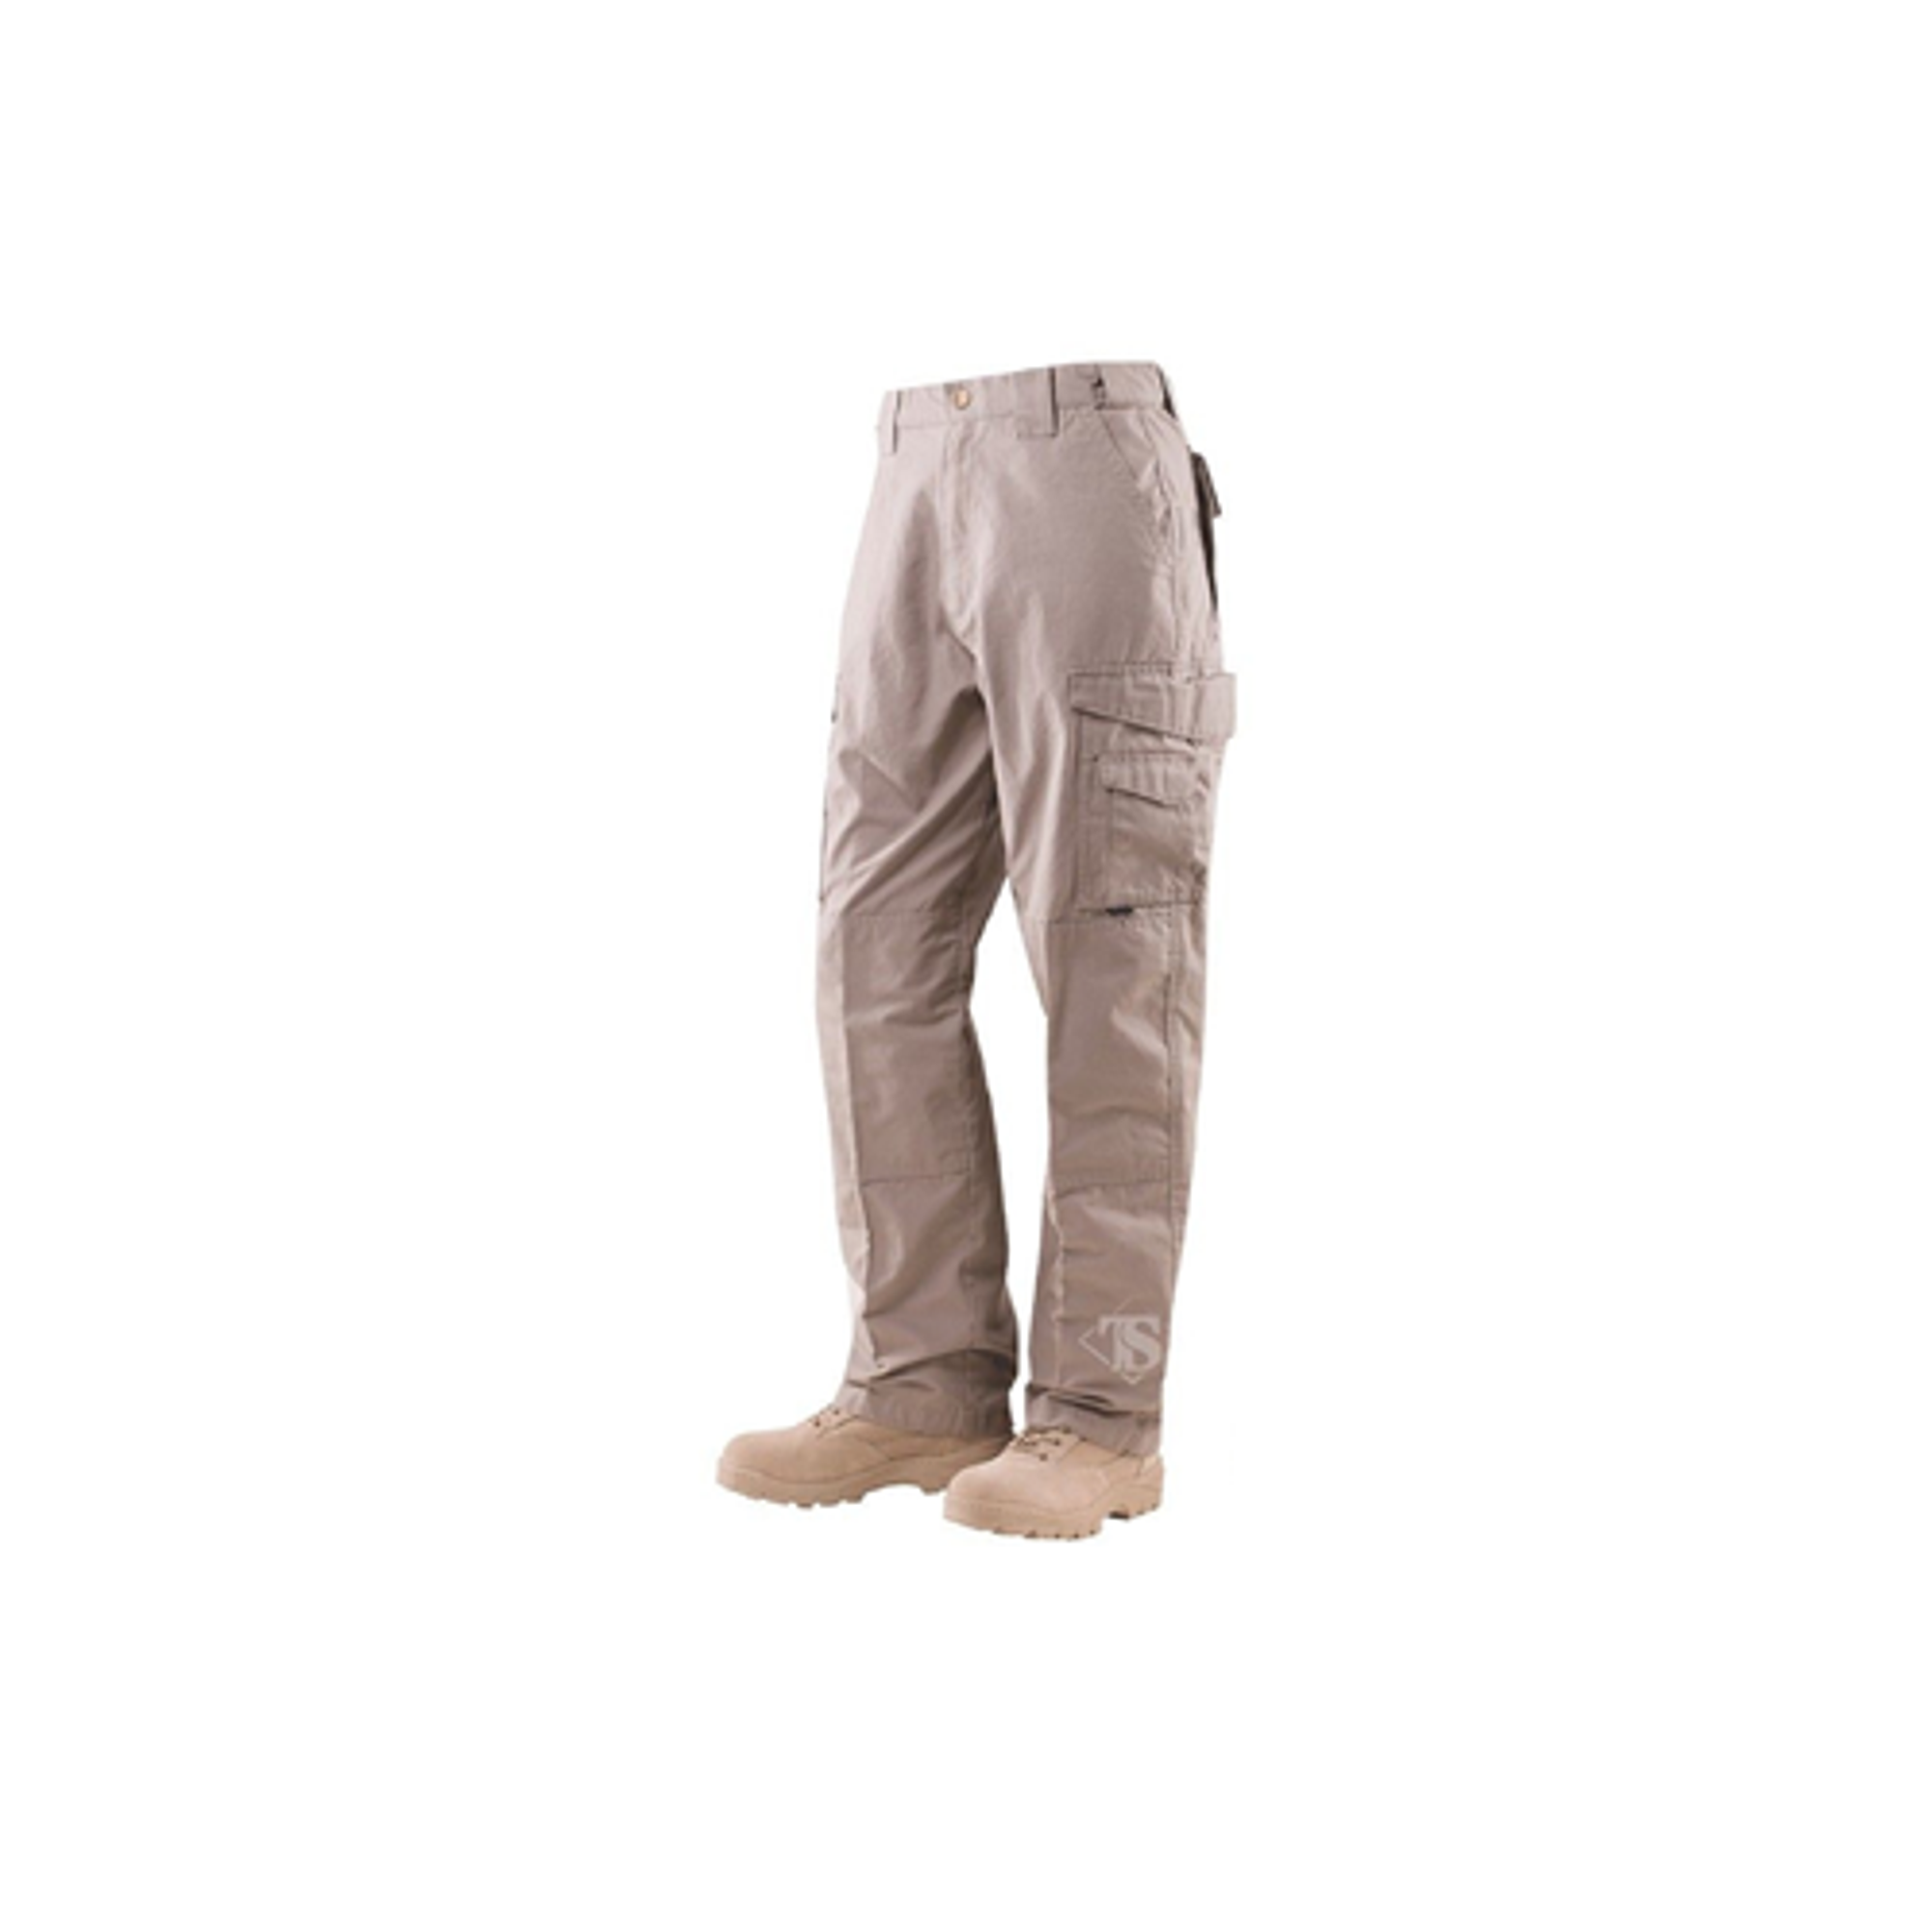 24-7 Original Tactical Pants - 6.5oz - Coyote - KRTSP-1063049